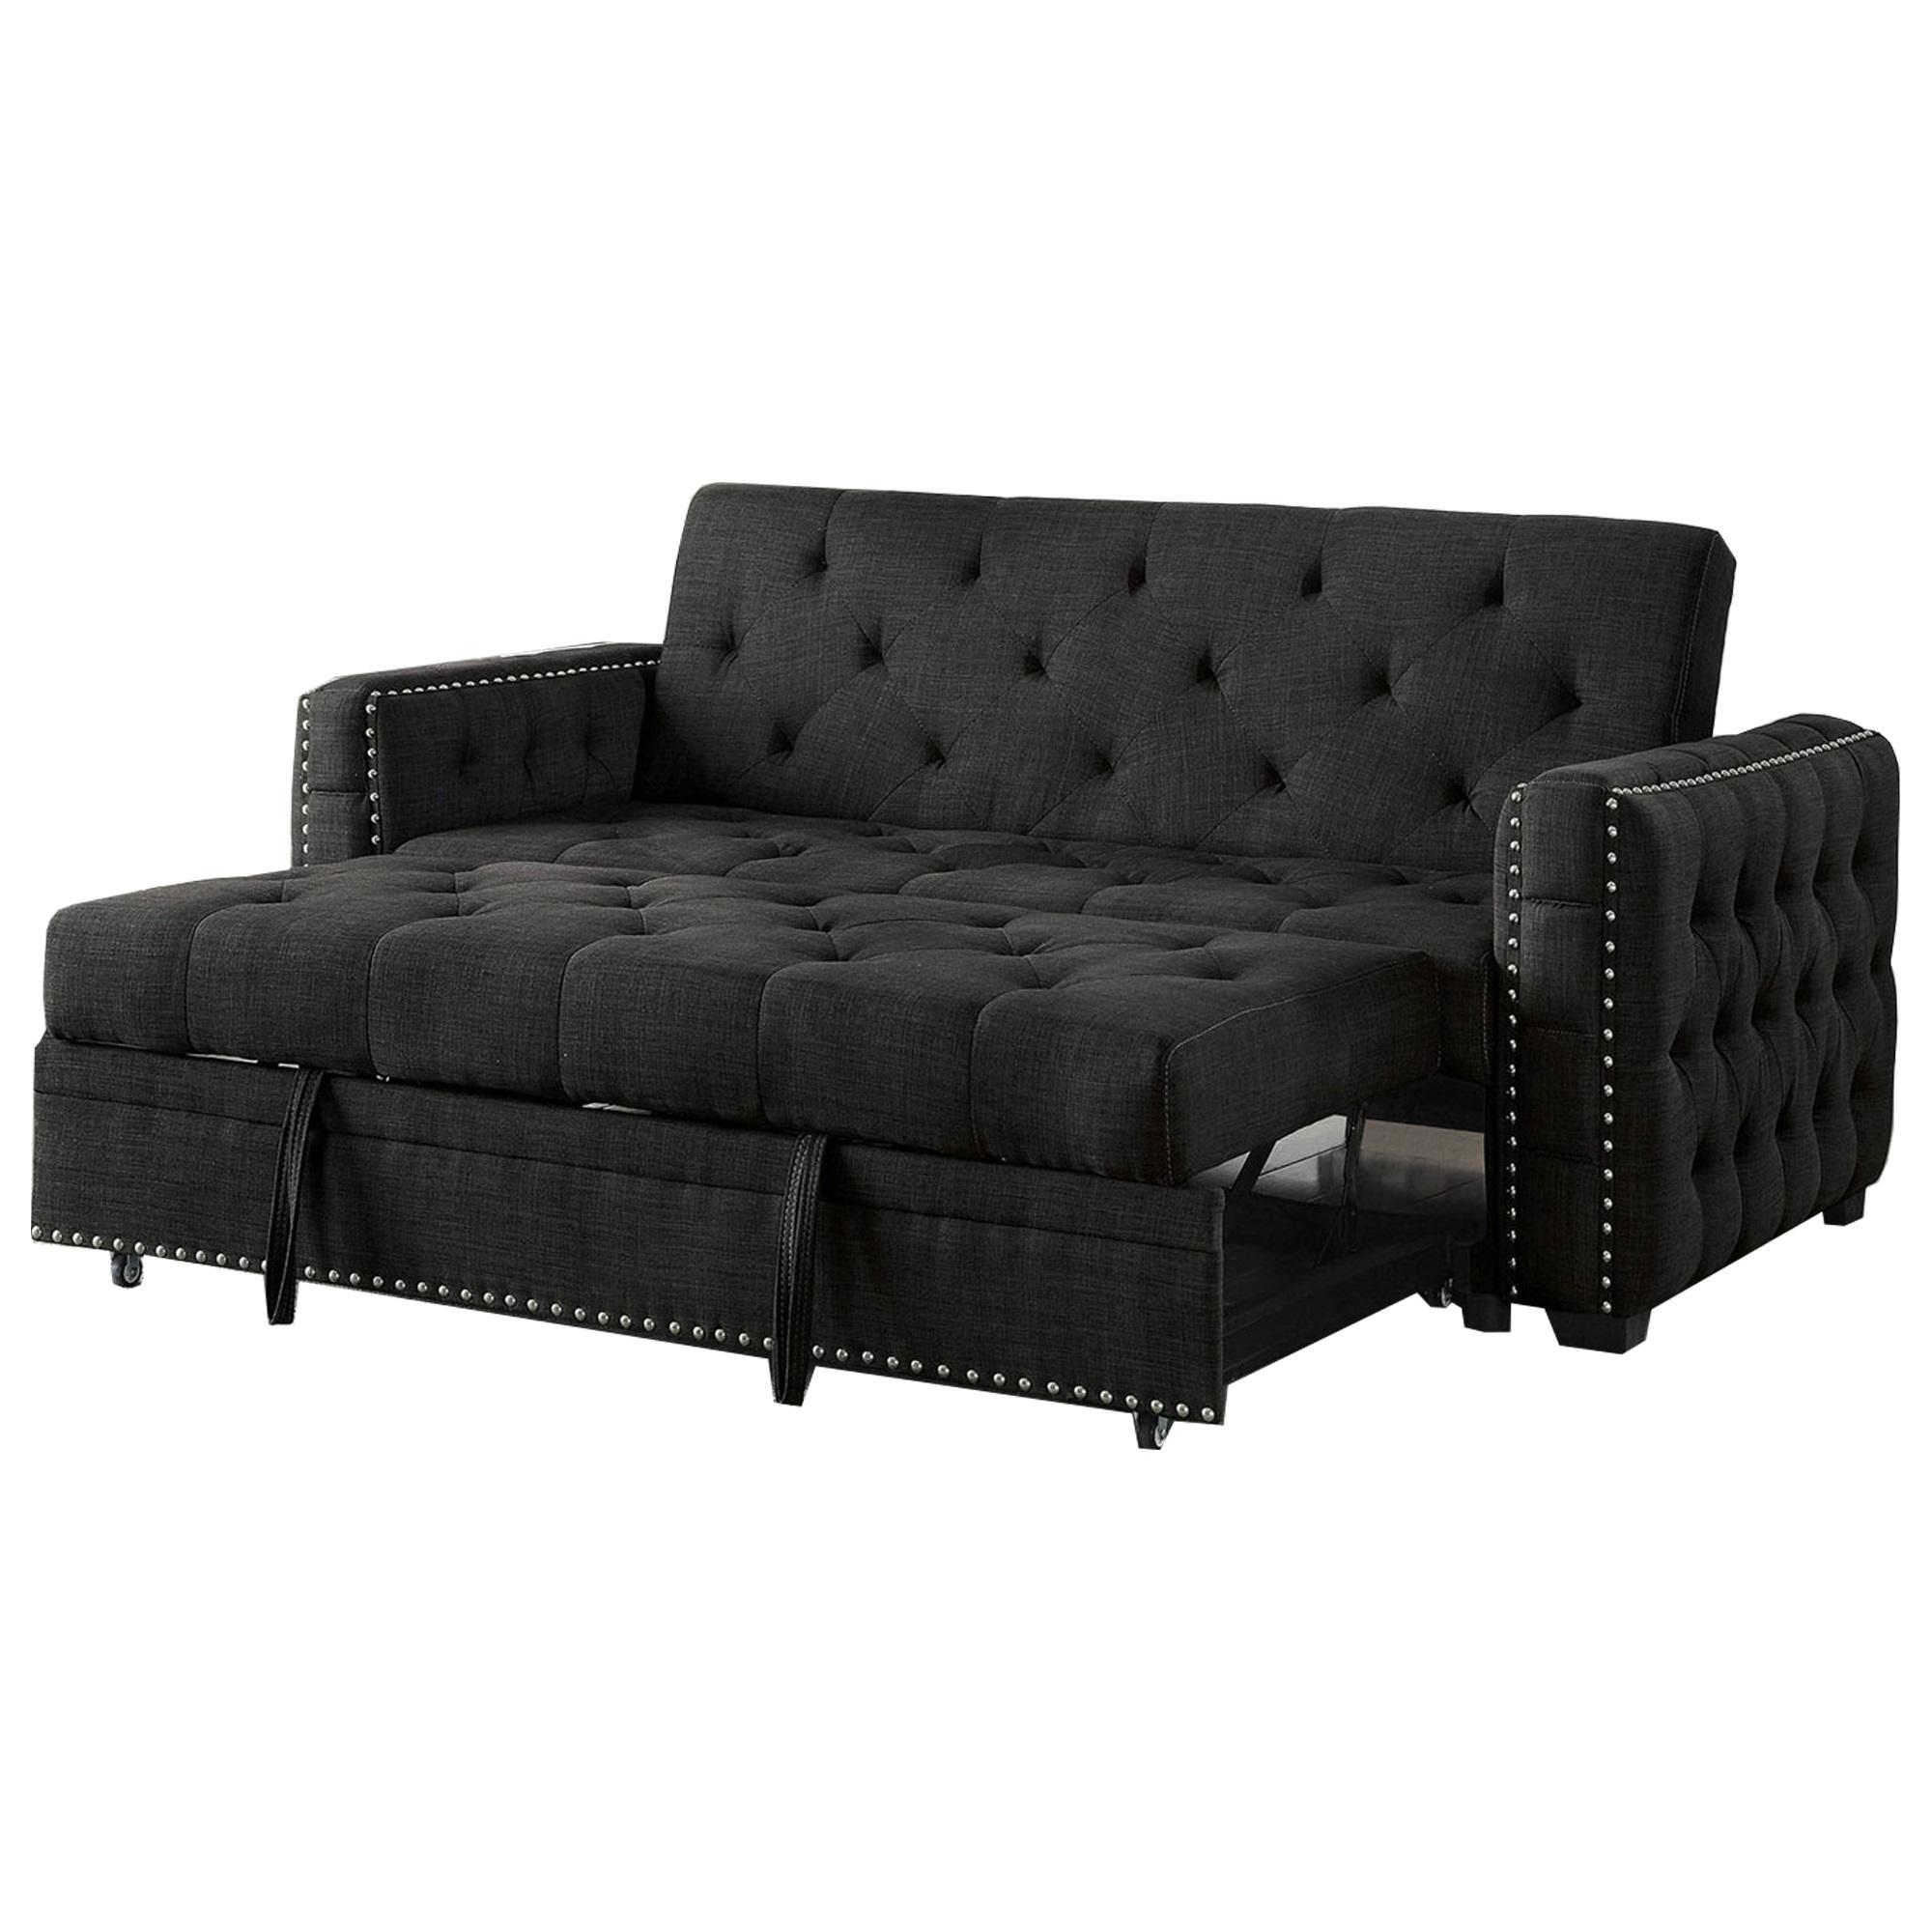 Transitional Futon sofa LEONORA CM2604 CM2604 in Gray 